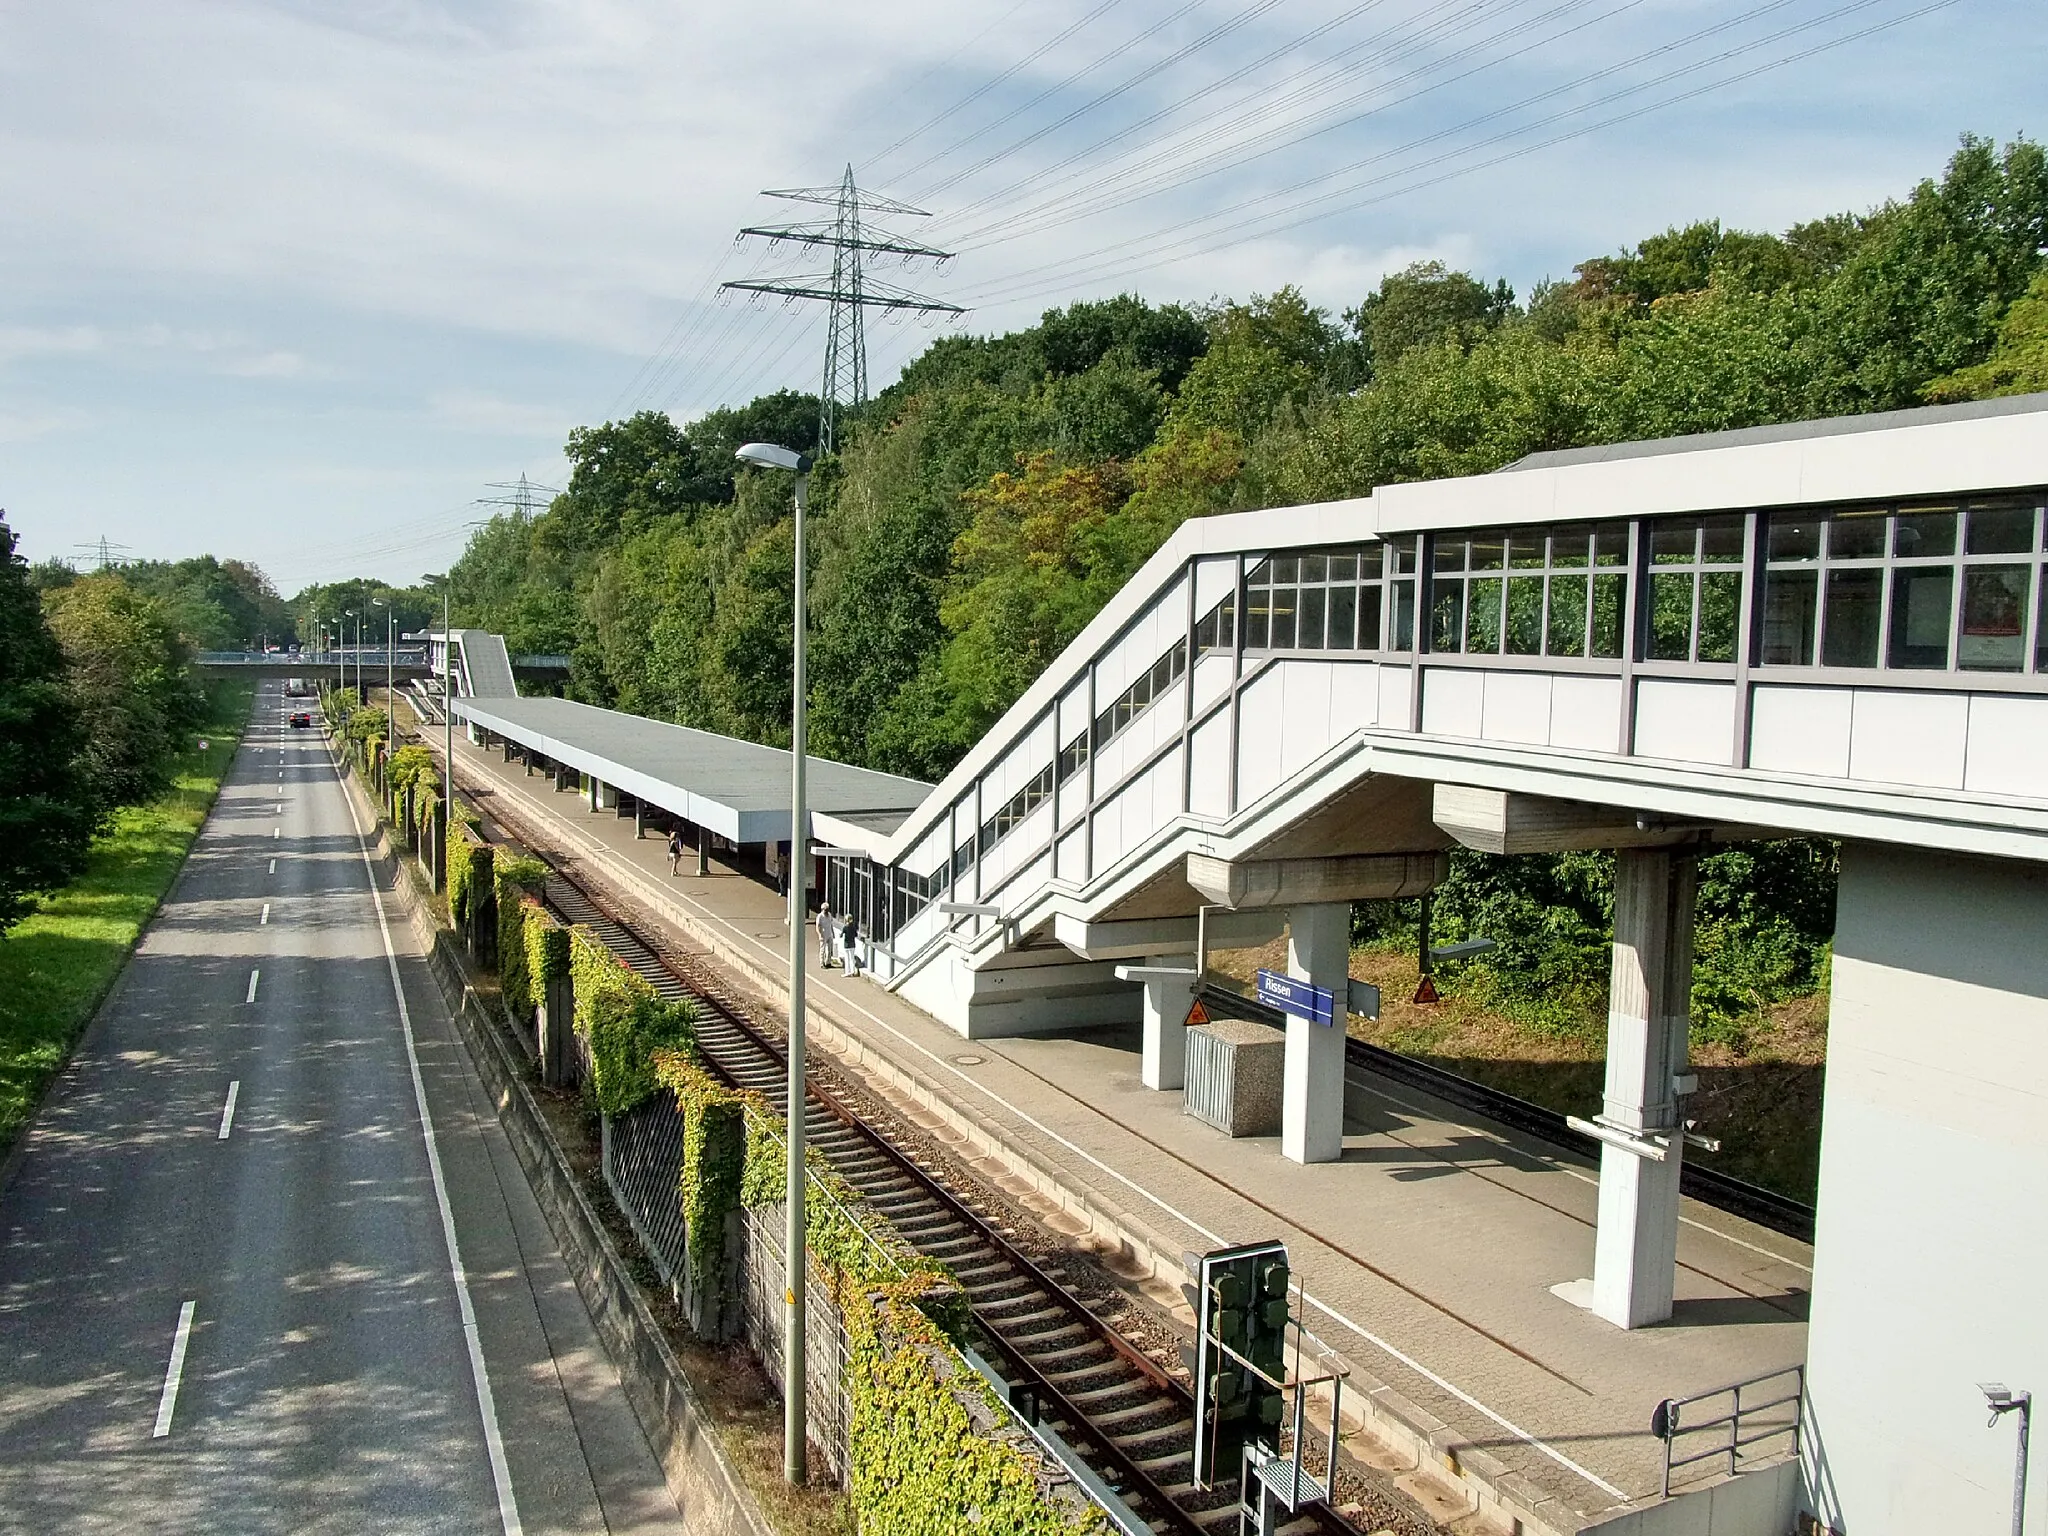 Photo showing: S-Bahnhof Rissen und die Bundesstraße 431 - Sülldorfer Landstraße in Richtung Wedel parallel zu den Bahngleisen.